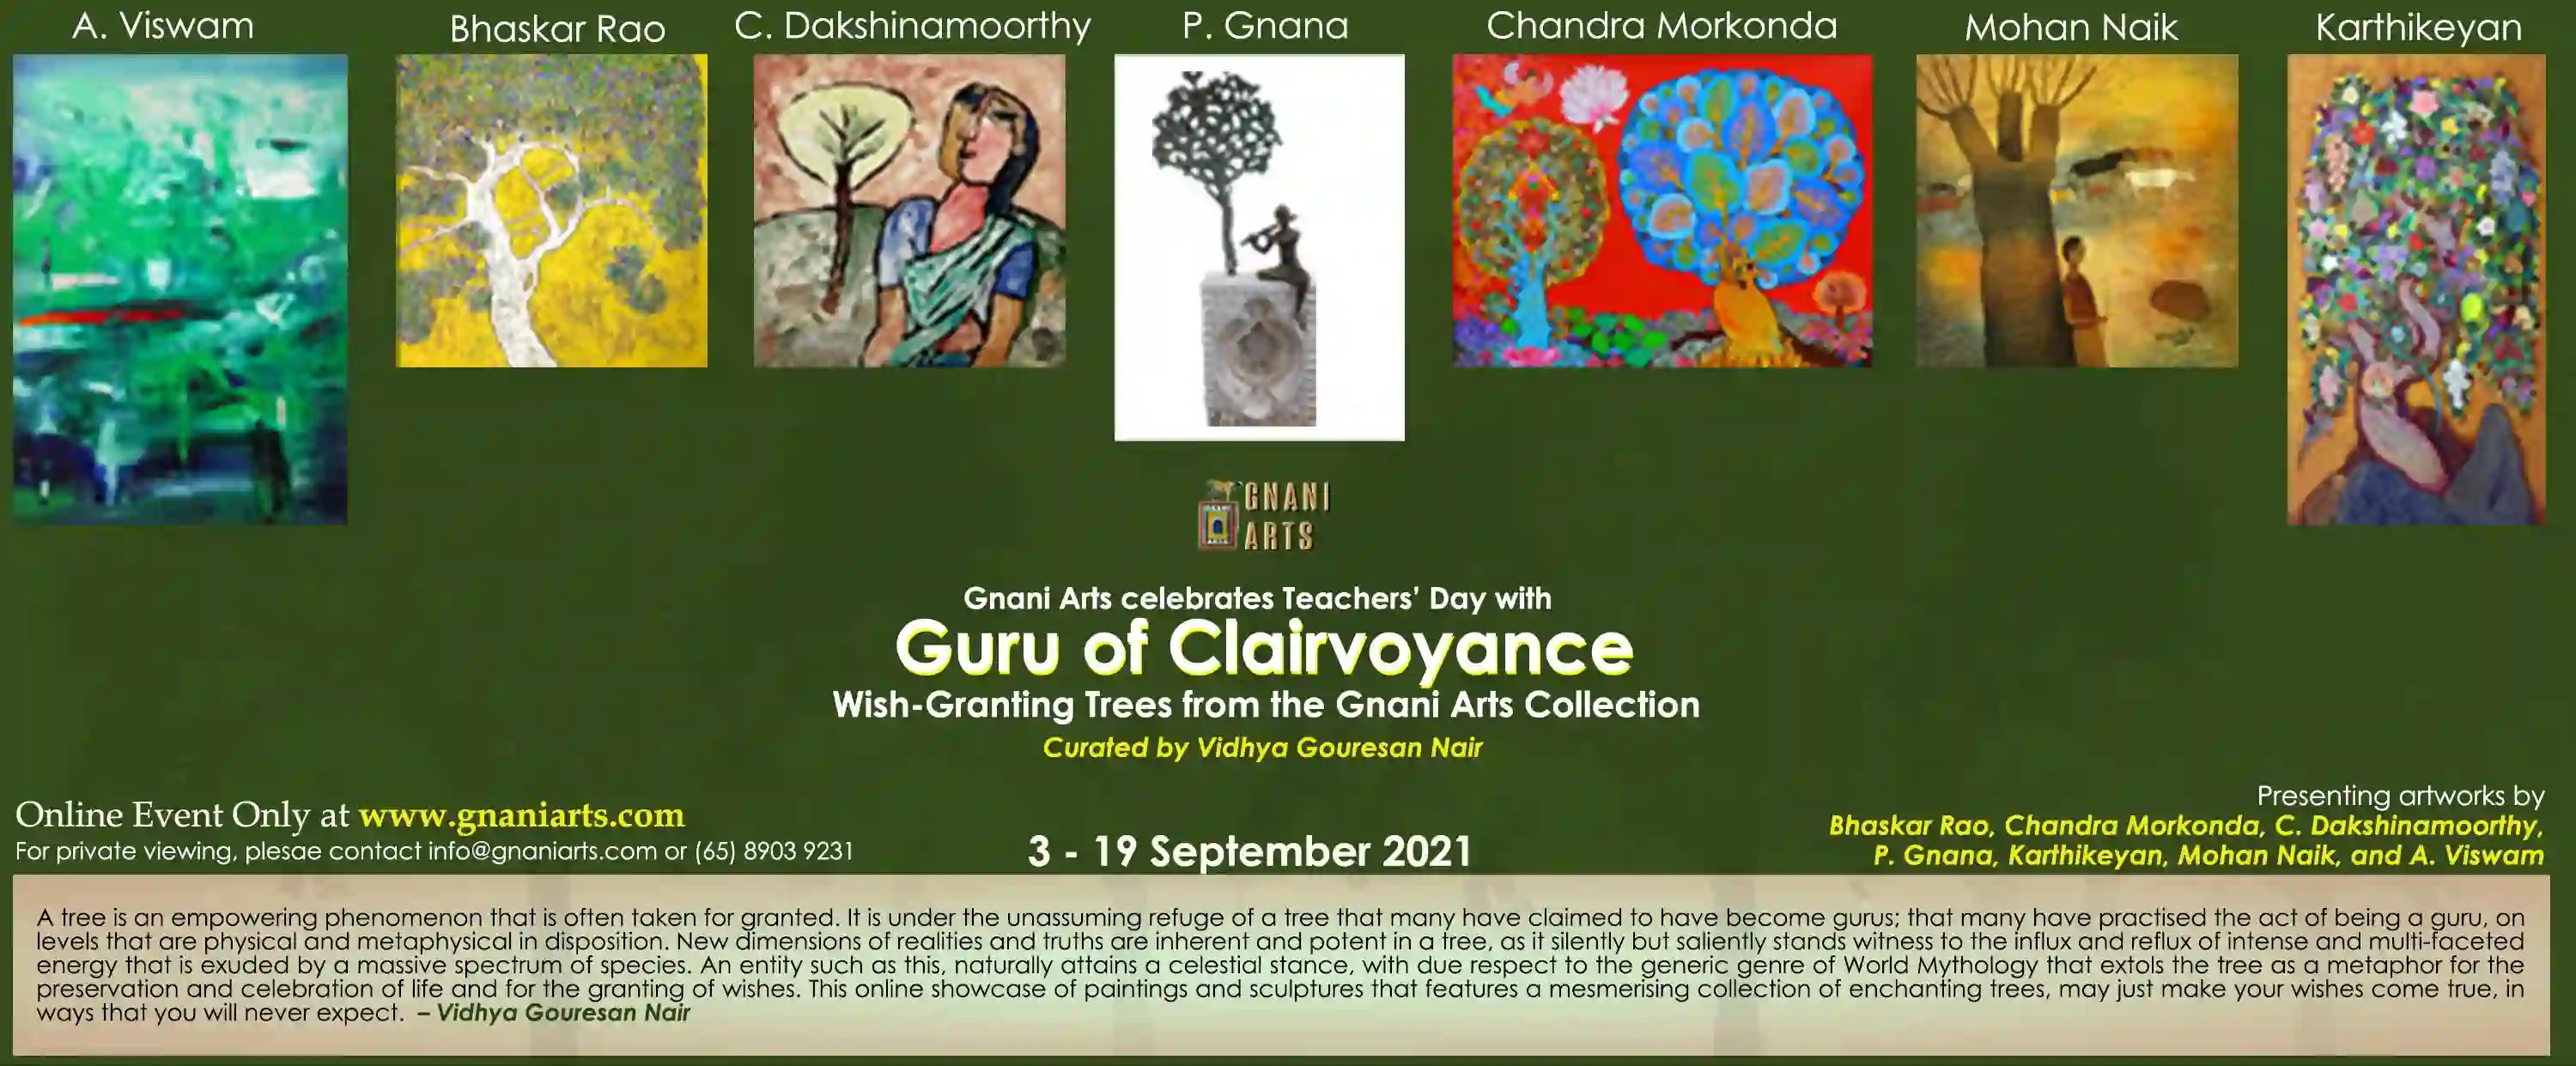 Website Guru of Clairvoyance